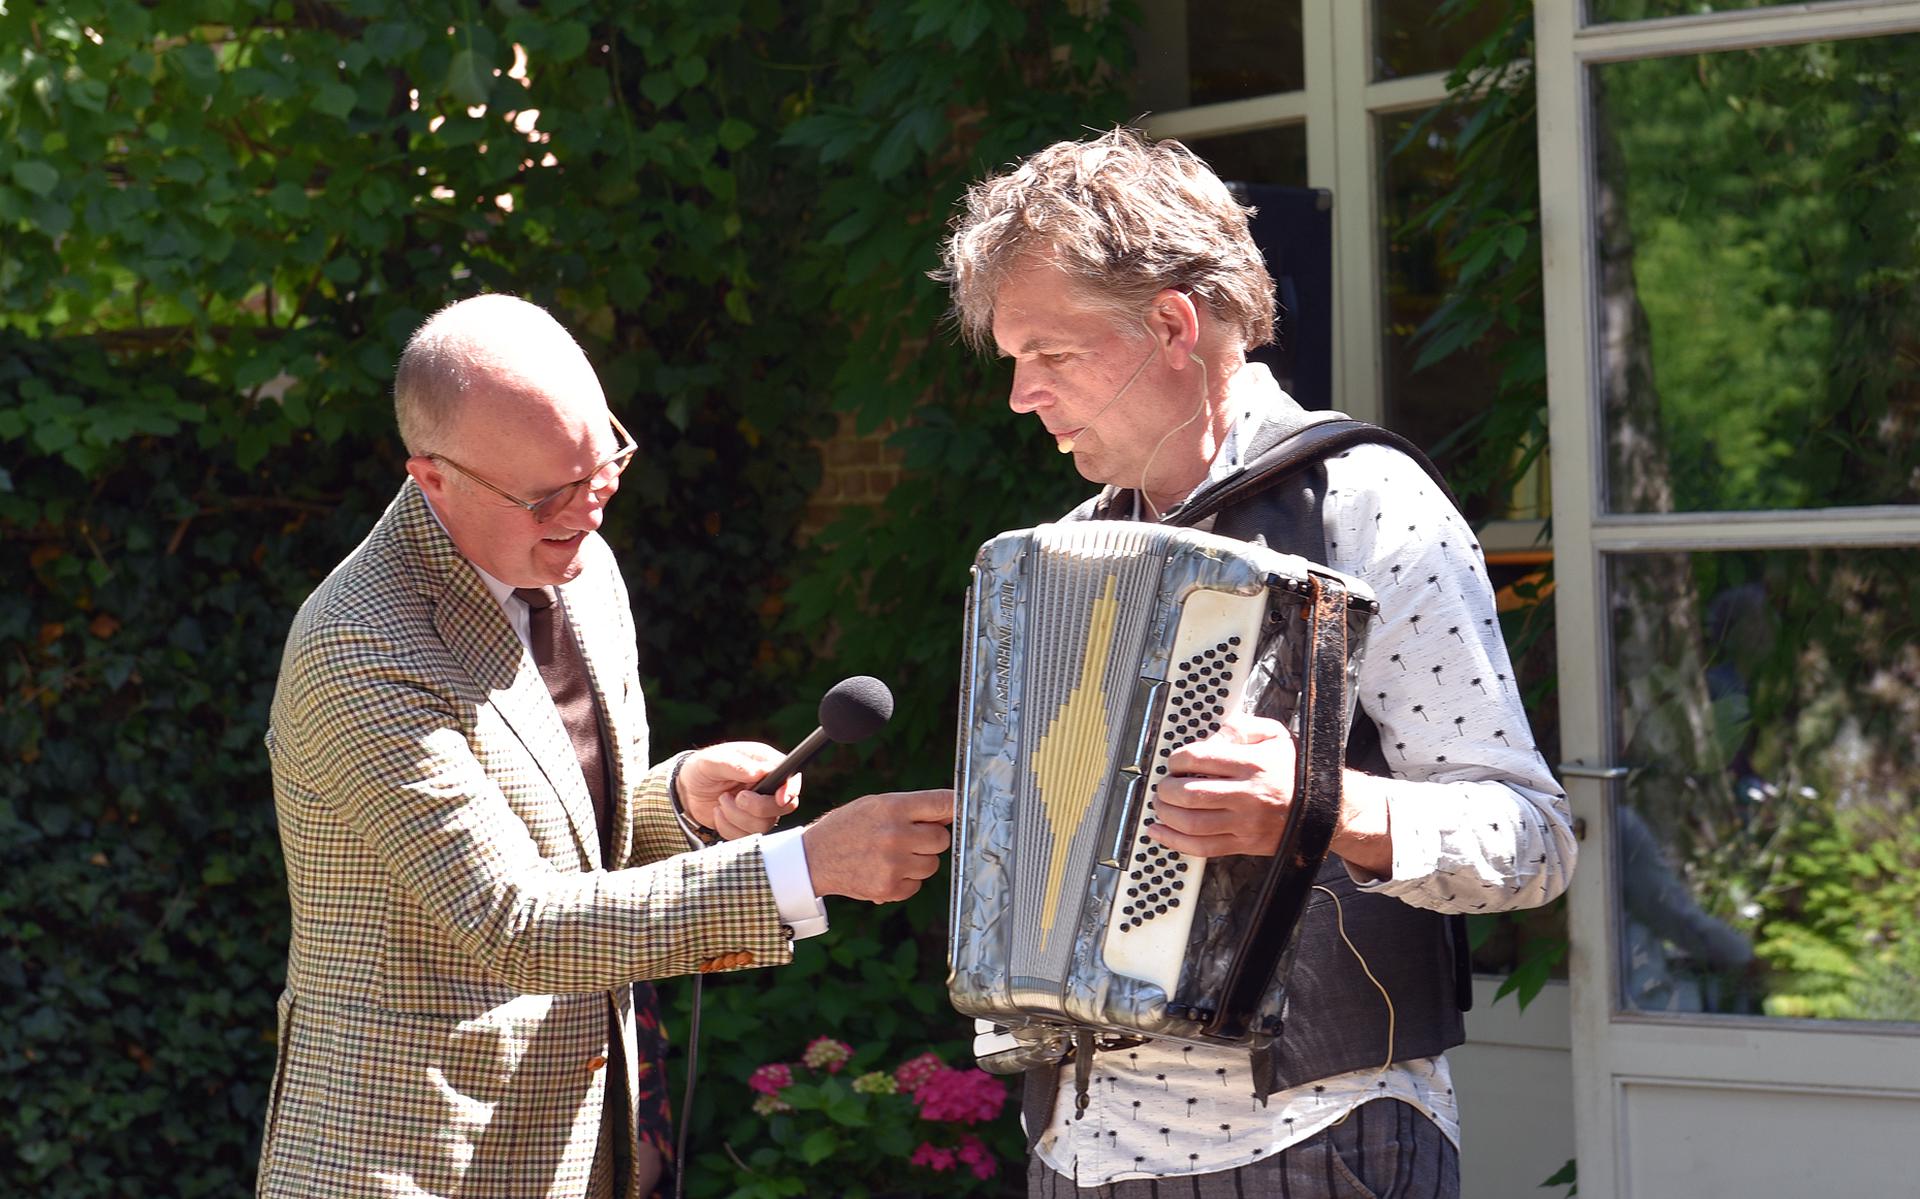 Commissaris van de Koning Brok opende de jubileumeditie van Open Stal door een toets van het accordeon van voorzitter Peter Hoekstra in te drukken